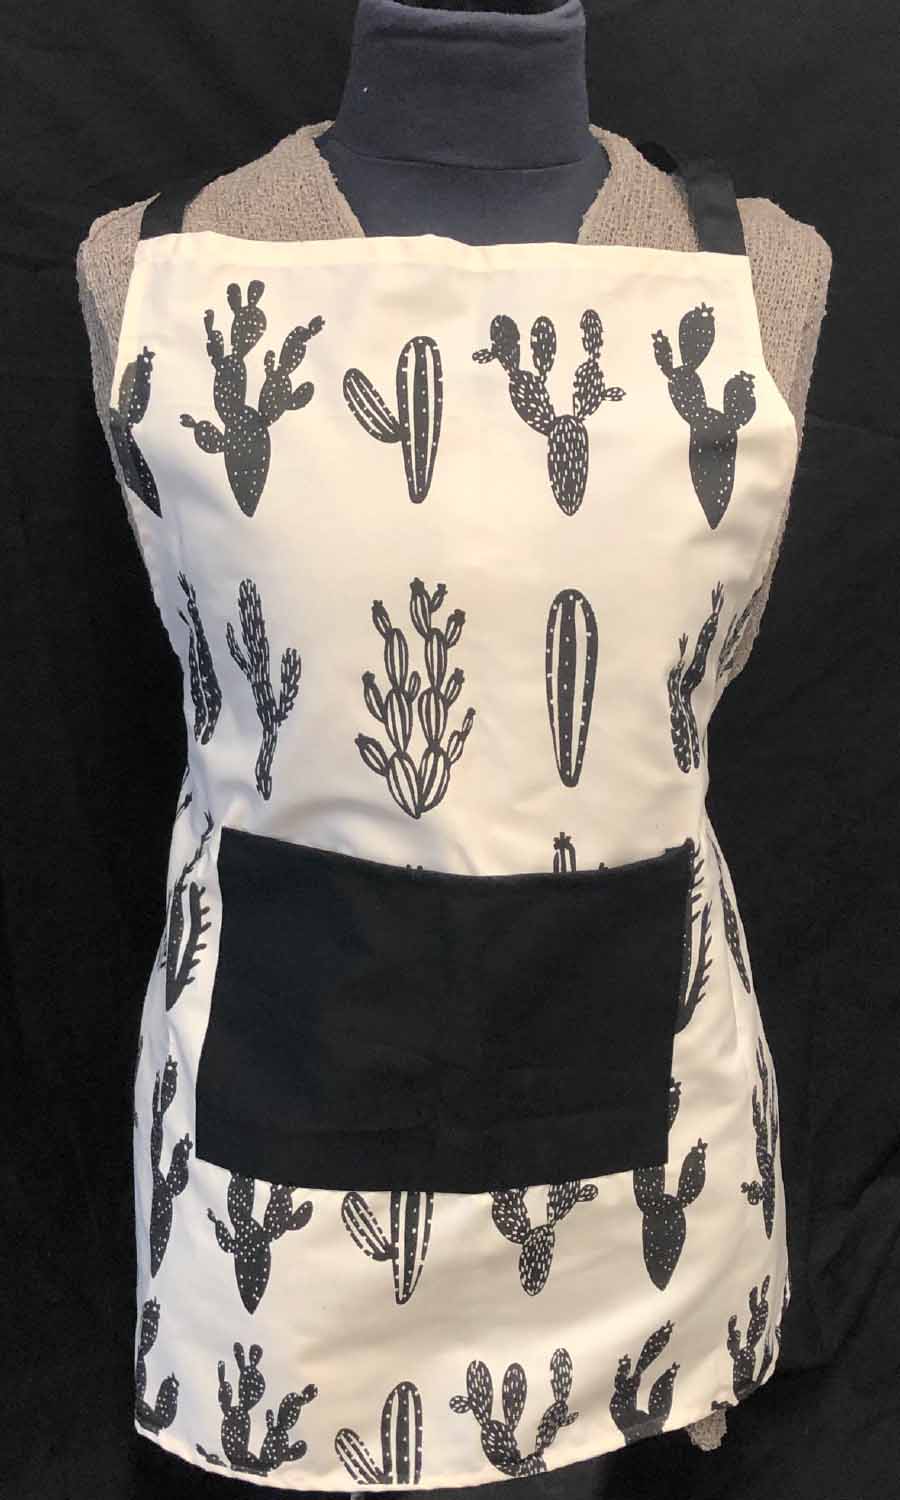 apron - cactus - w/ pocket - white/black